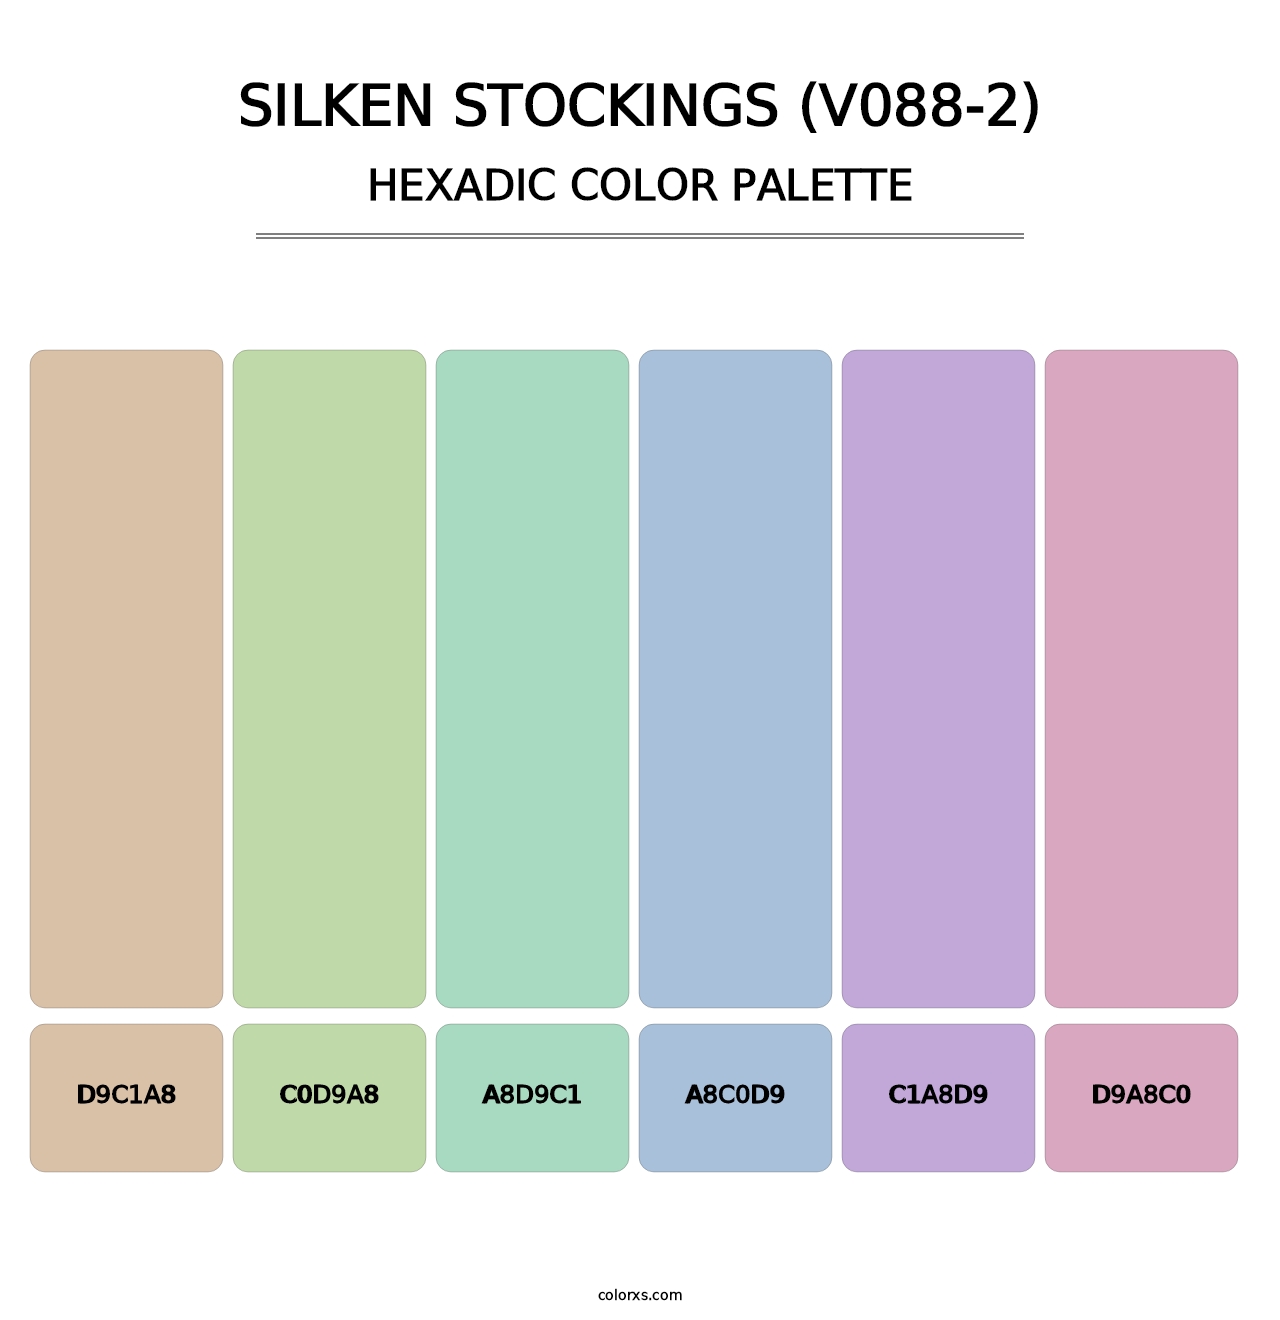 Silken Stockings (V088-2) - Hexadic Color Palette